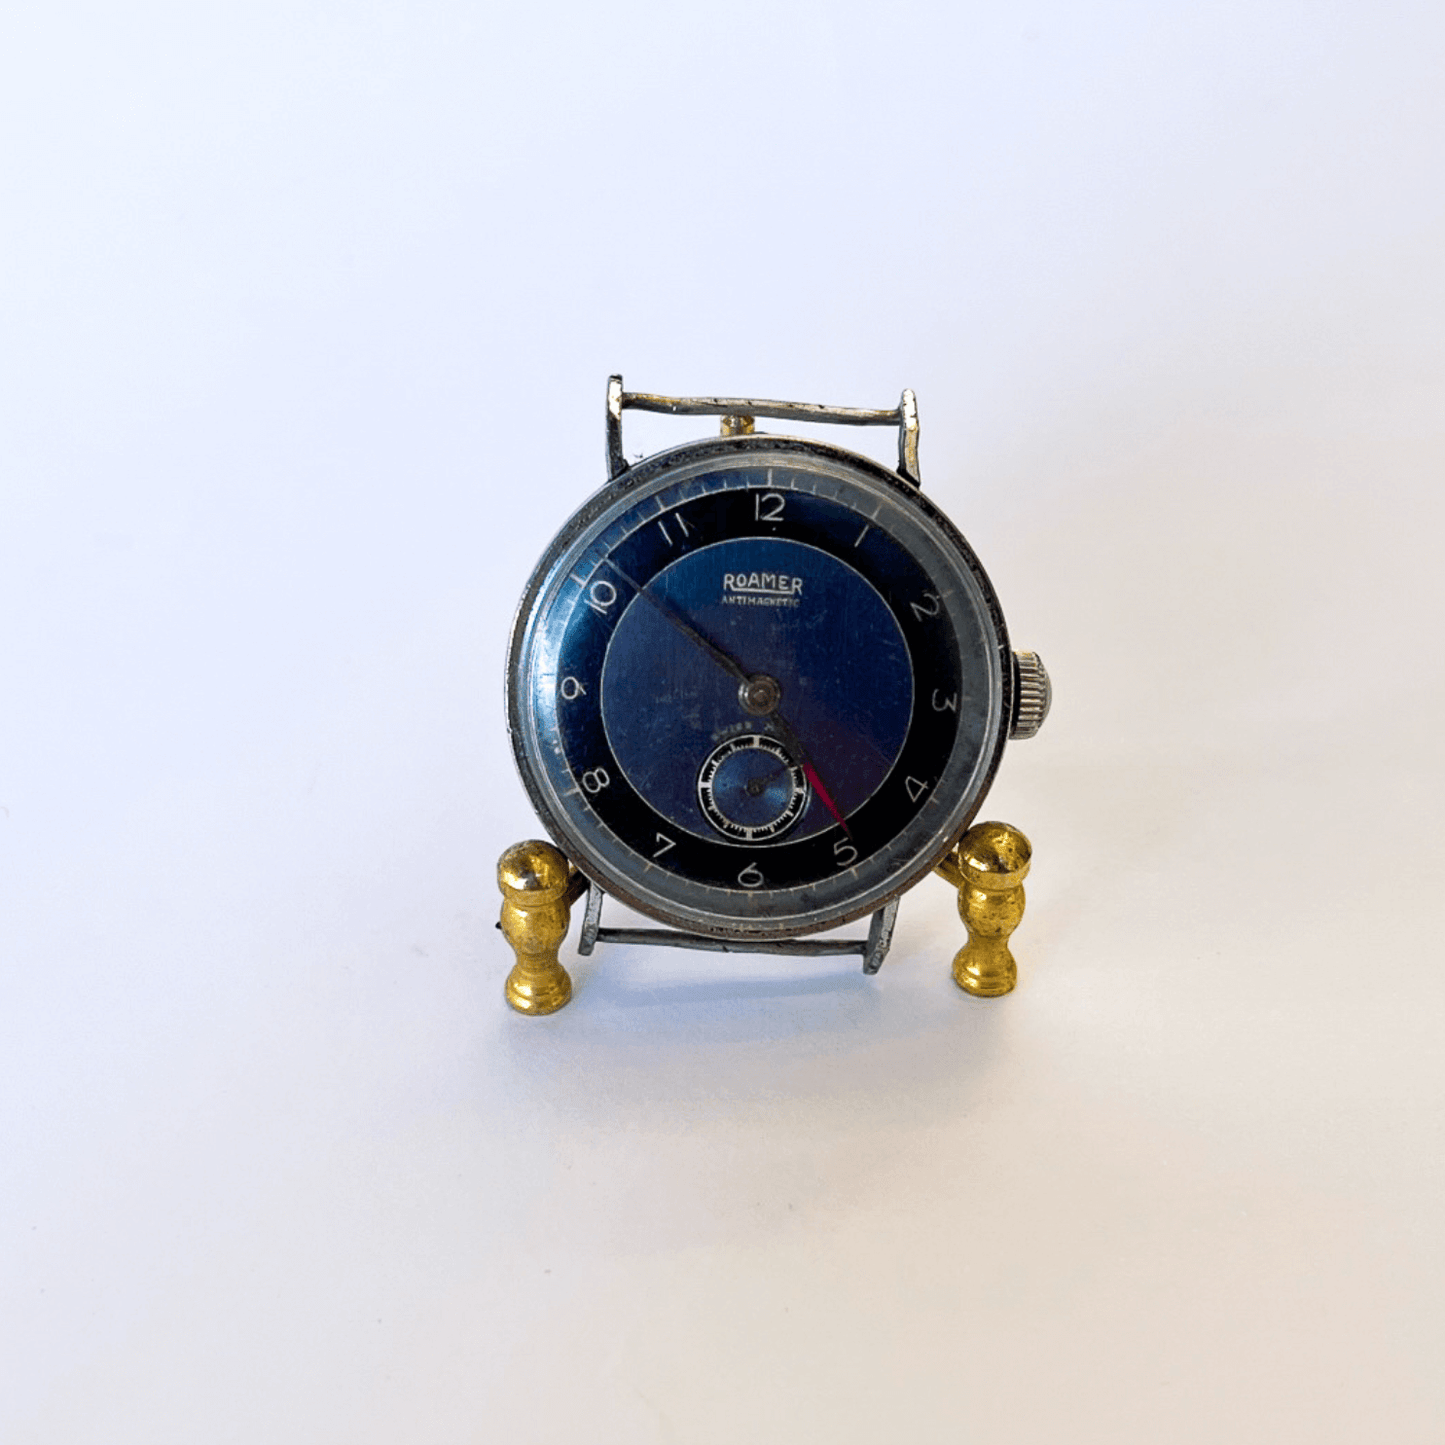 Relógio Militar Suíço Roamer dos anos 1930